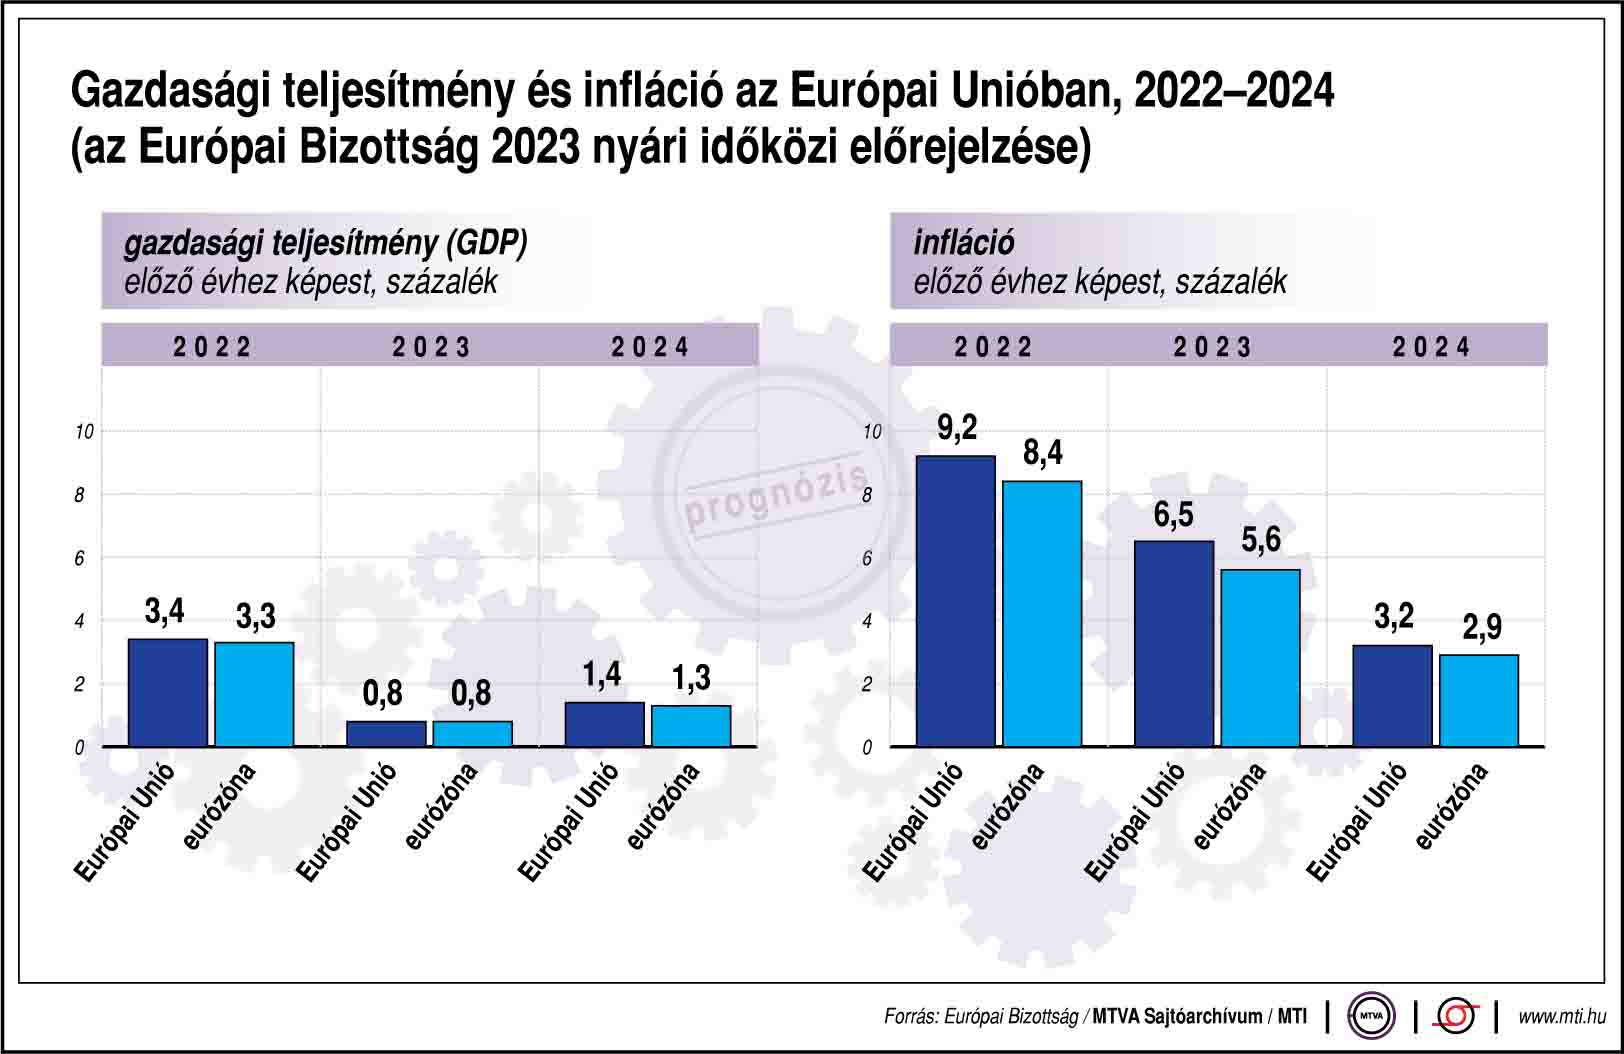 ilyen gazdasági teljesítményt és inflációt jósolnak az Európai Unióban 2024-re